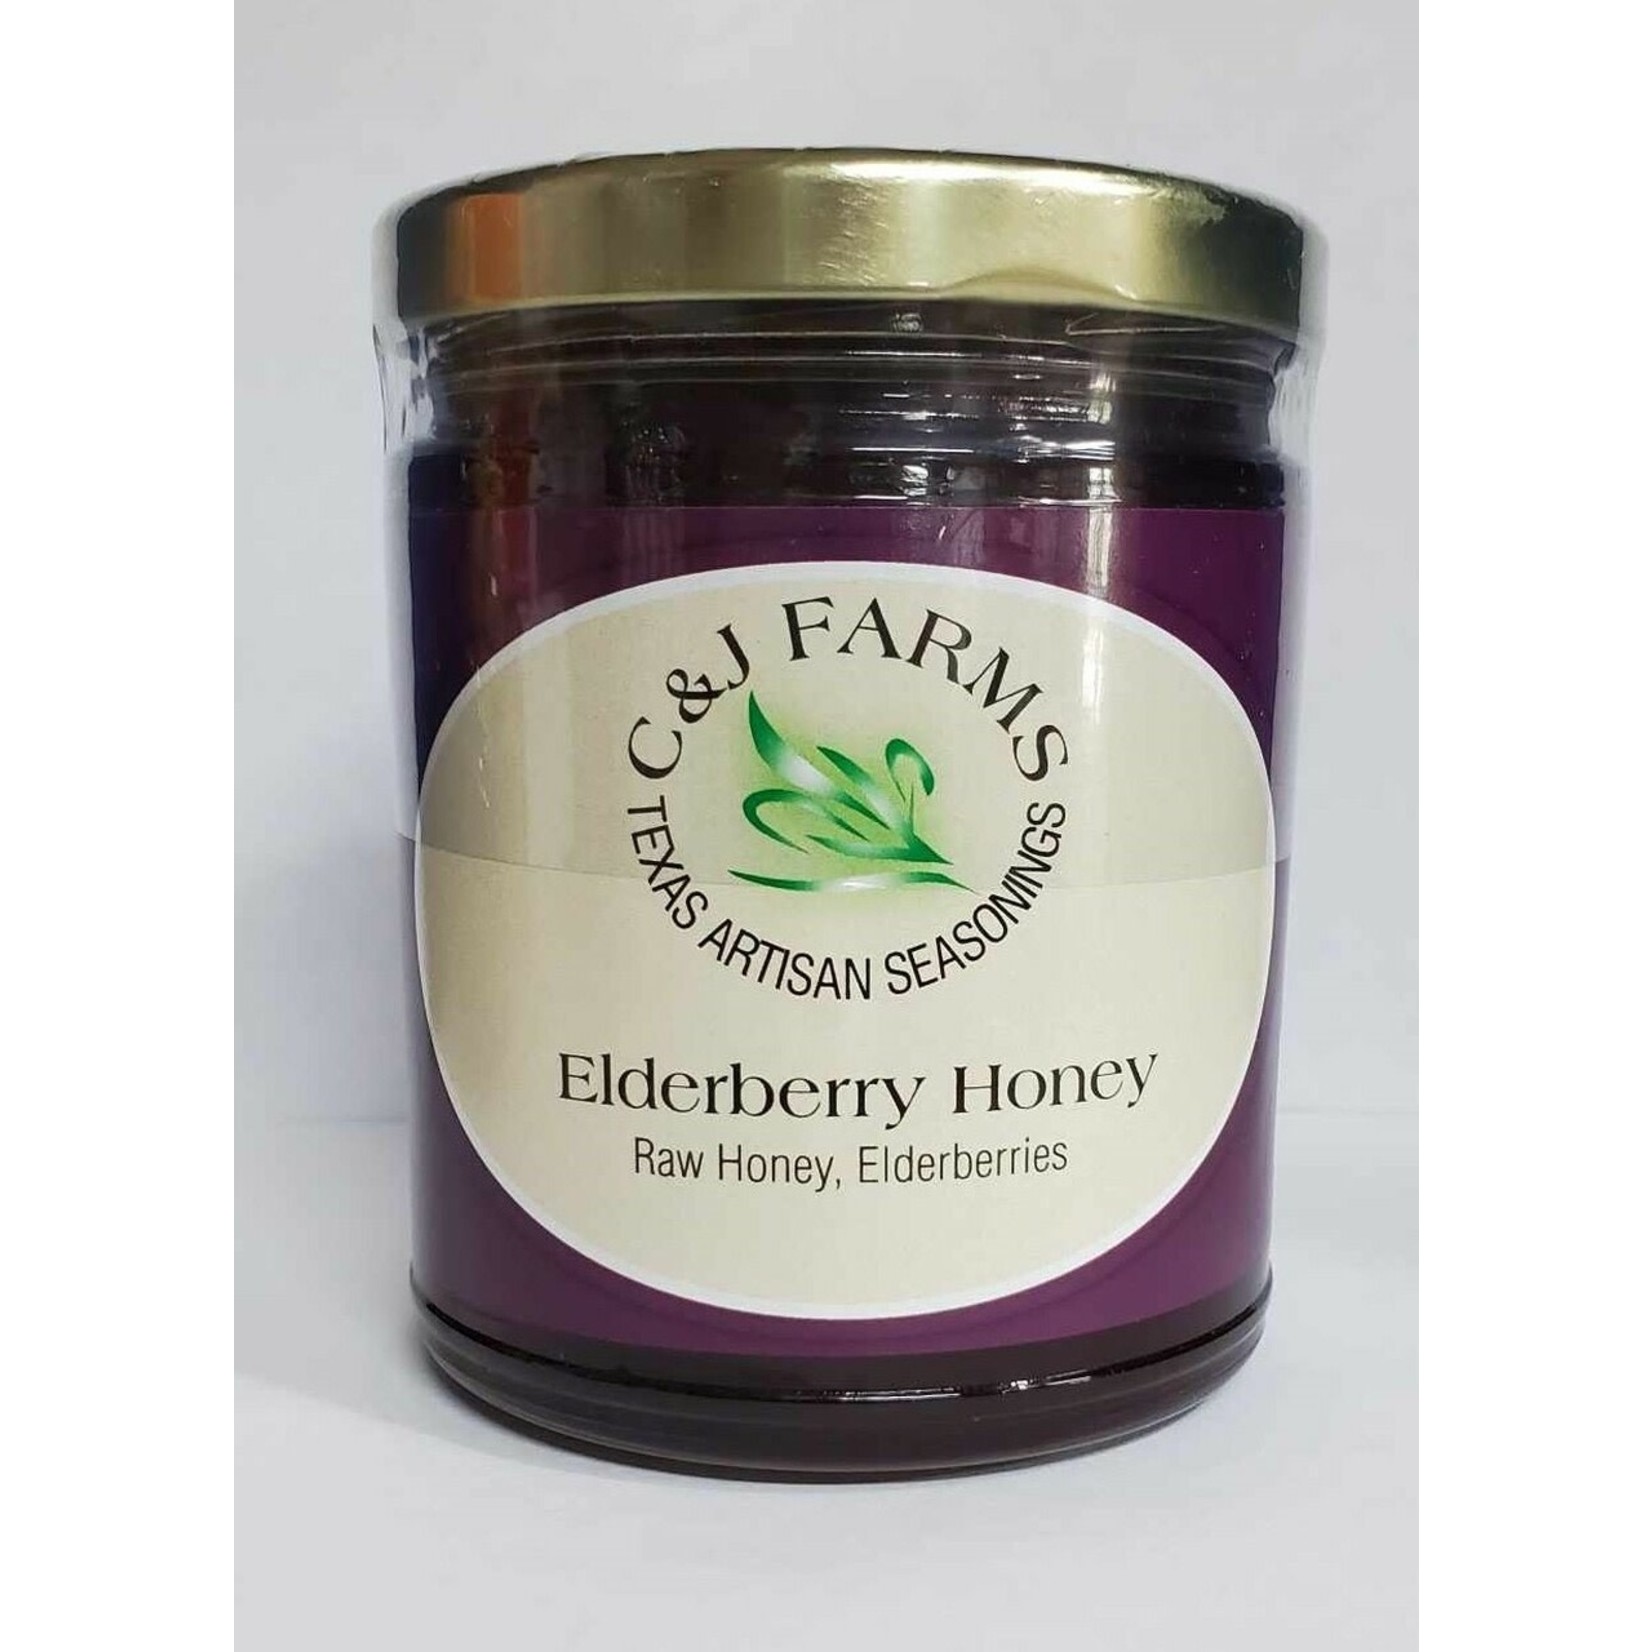 C & J Farms Elderberry Honey